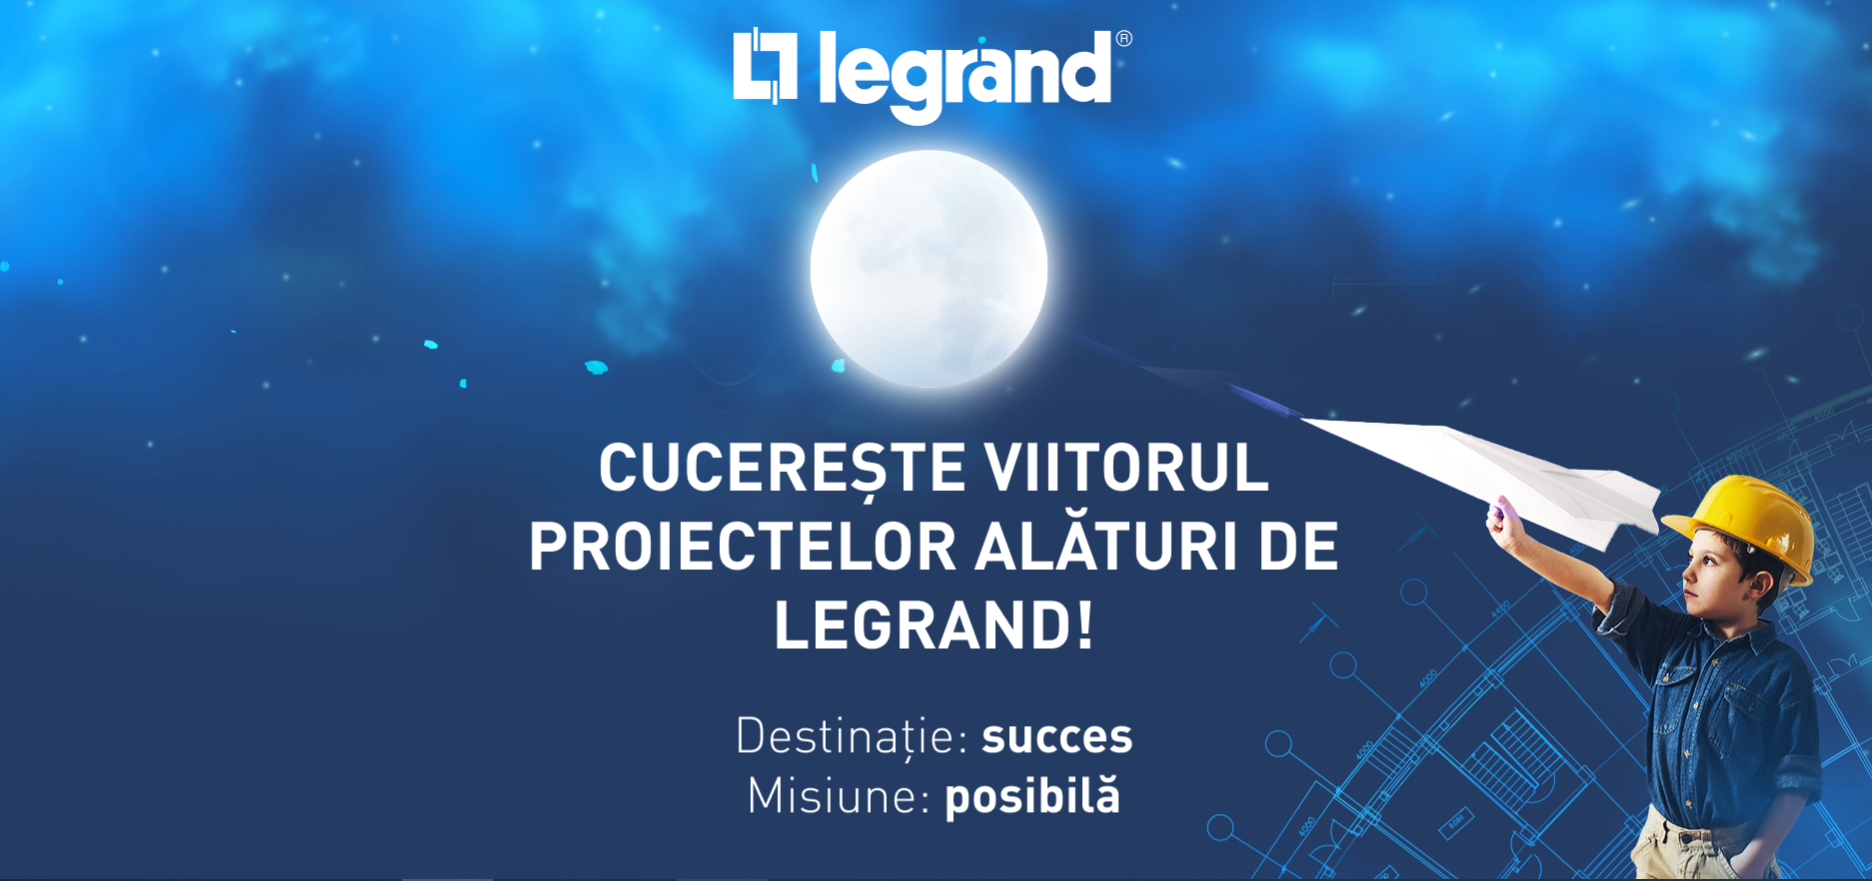 Legrand și White Image lansează campania „Cucerește viitorul proiectelor alături de Legrand” și își recompensează partenerii